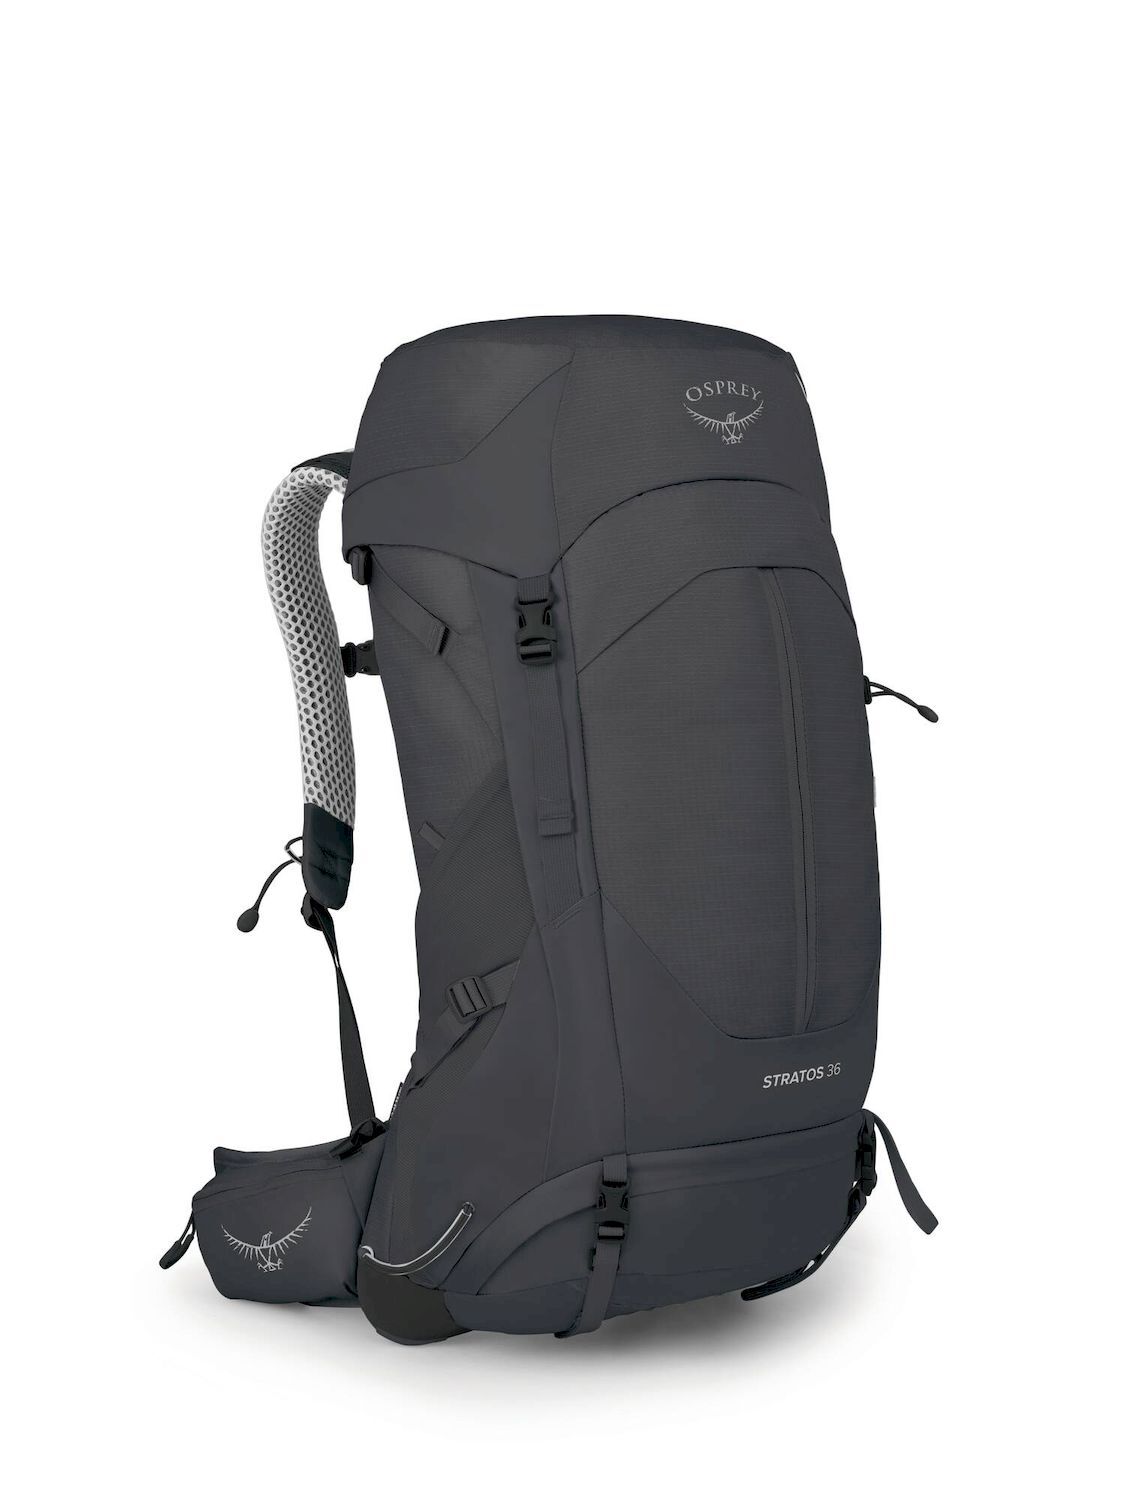 Osprey Stratos 36 - Walking backpack - Men's